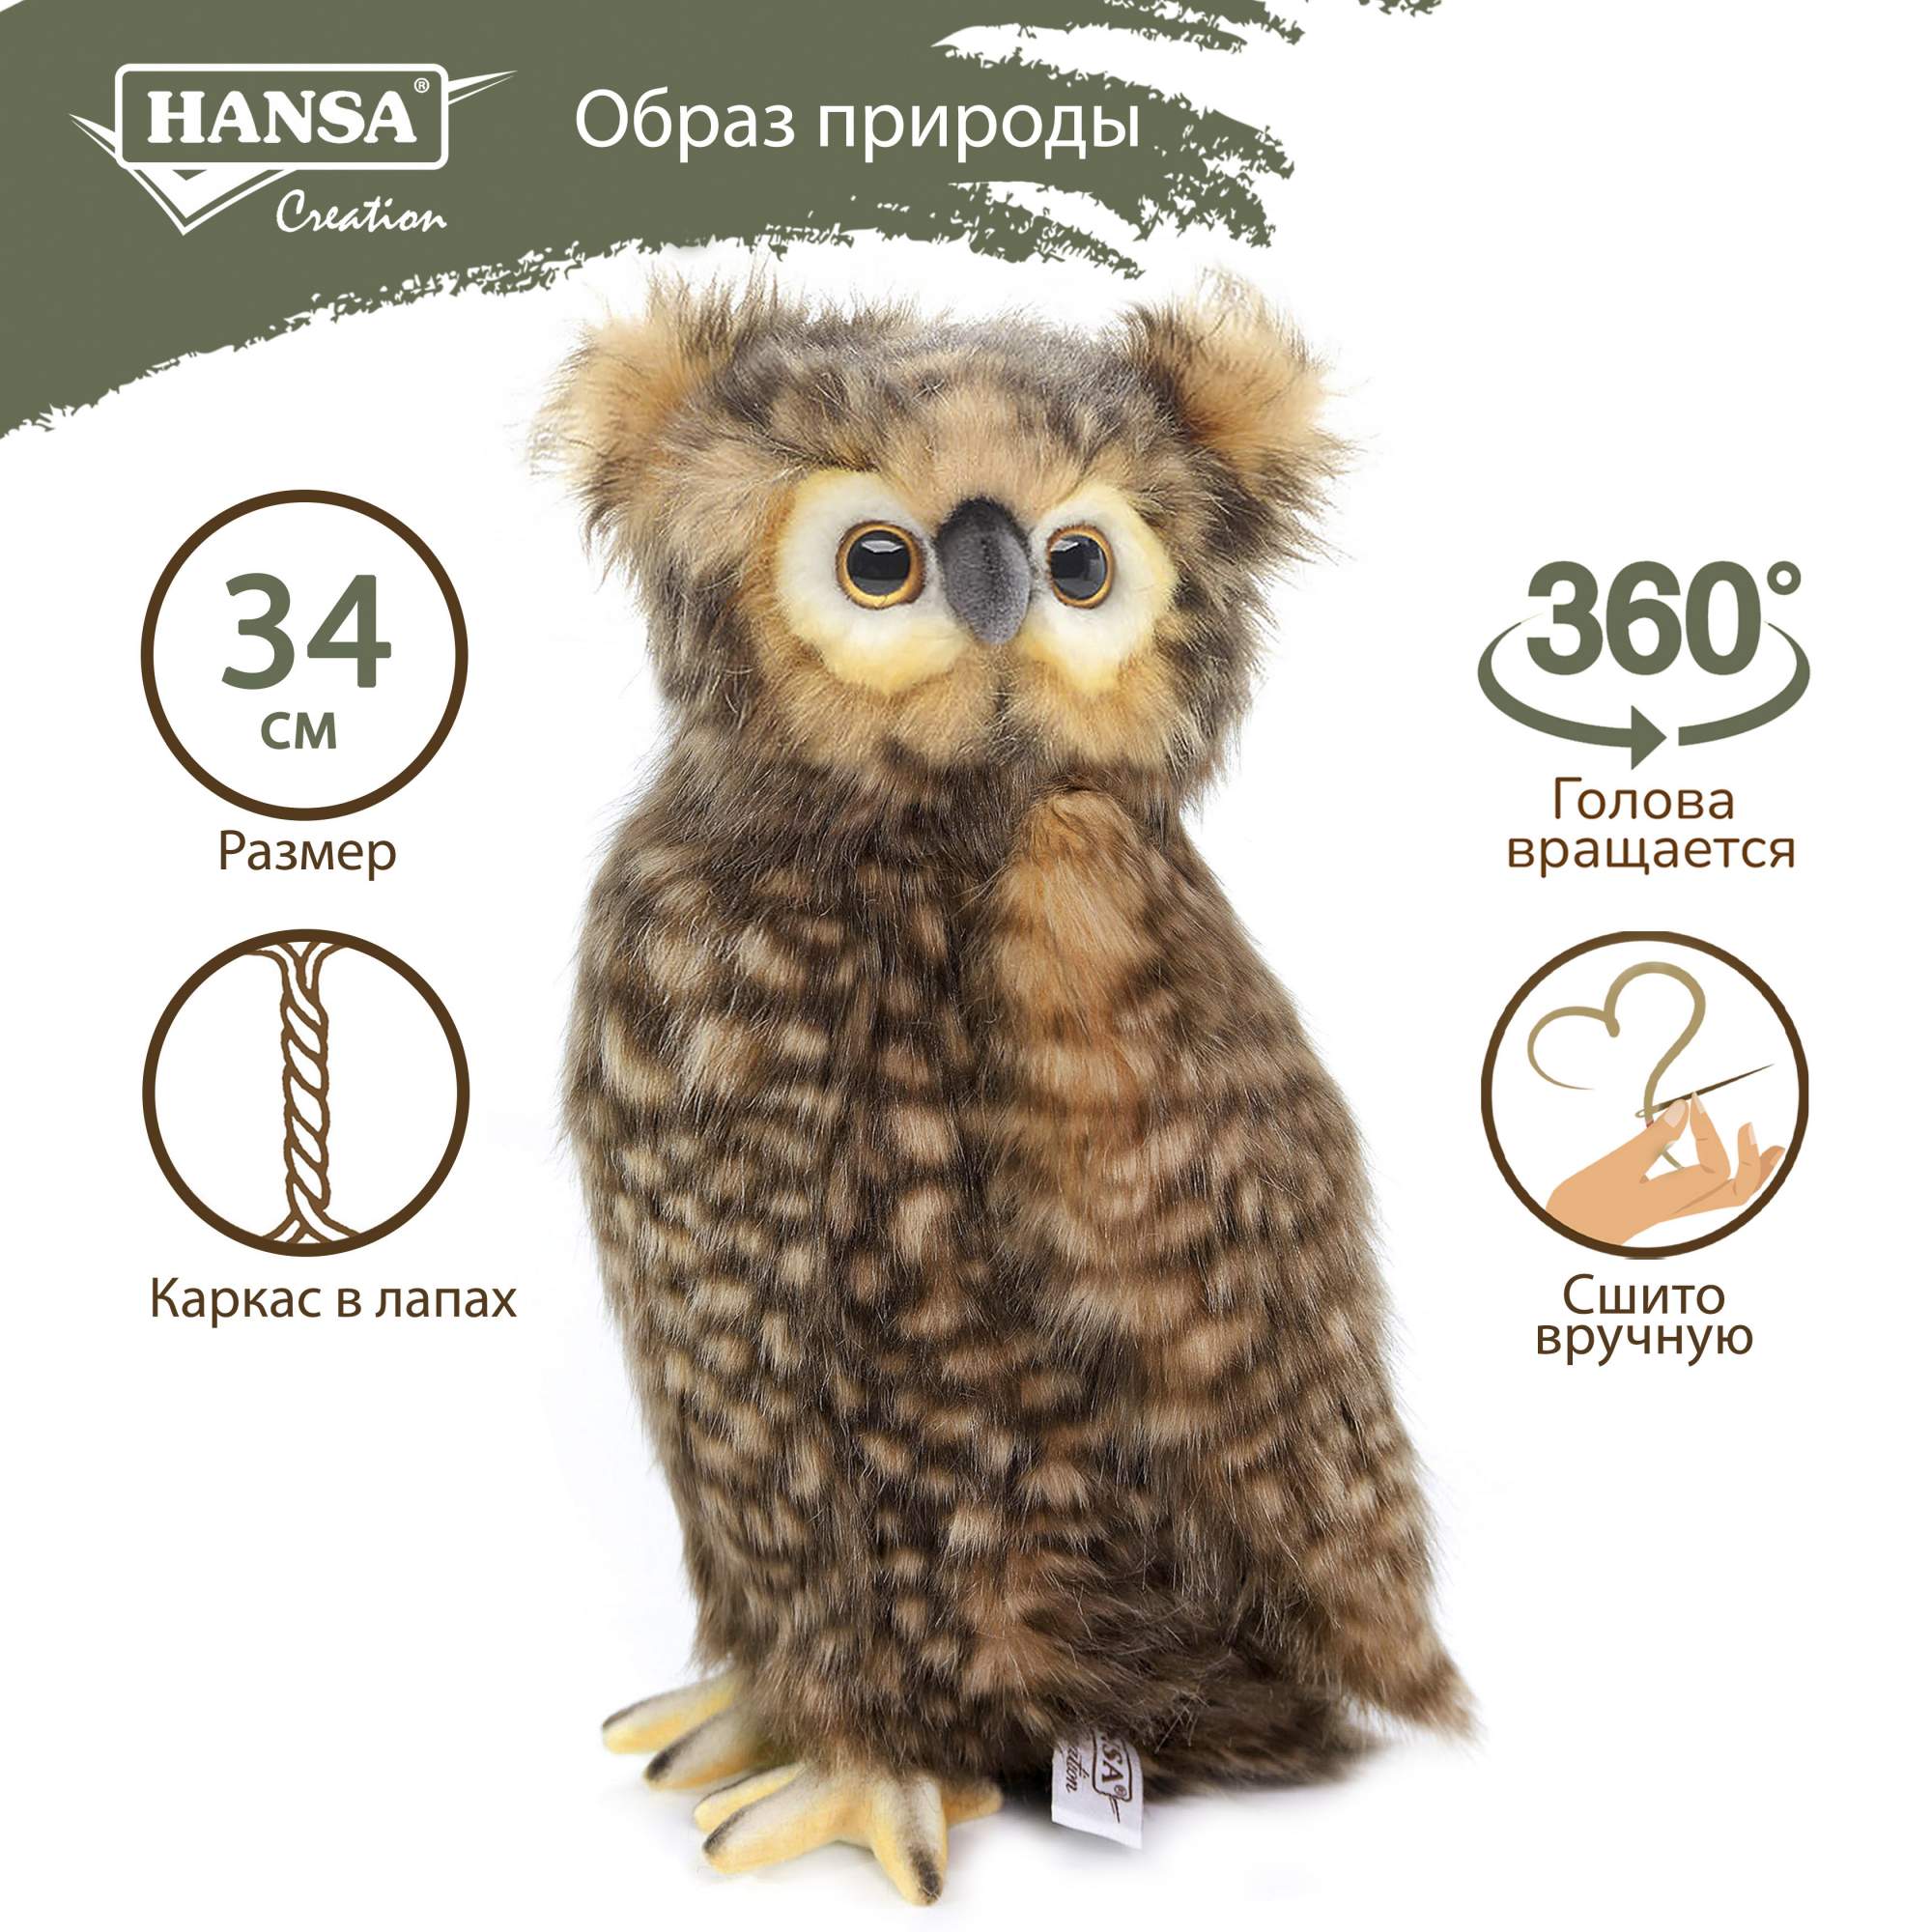 Реалистичная мягкая игрушка Hansa Creation Сова ушастая, 34 см - купить в  marttoys, цена на Мегамаркет